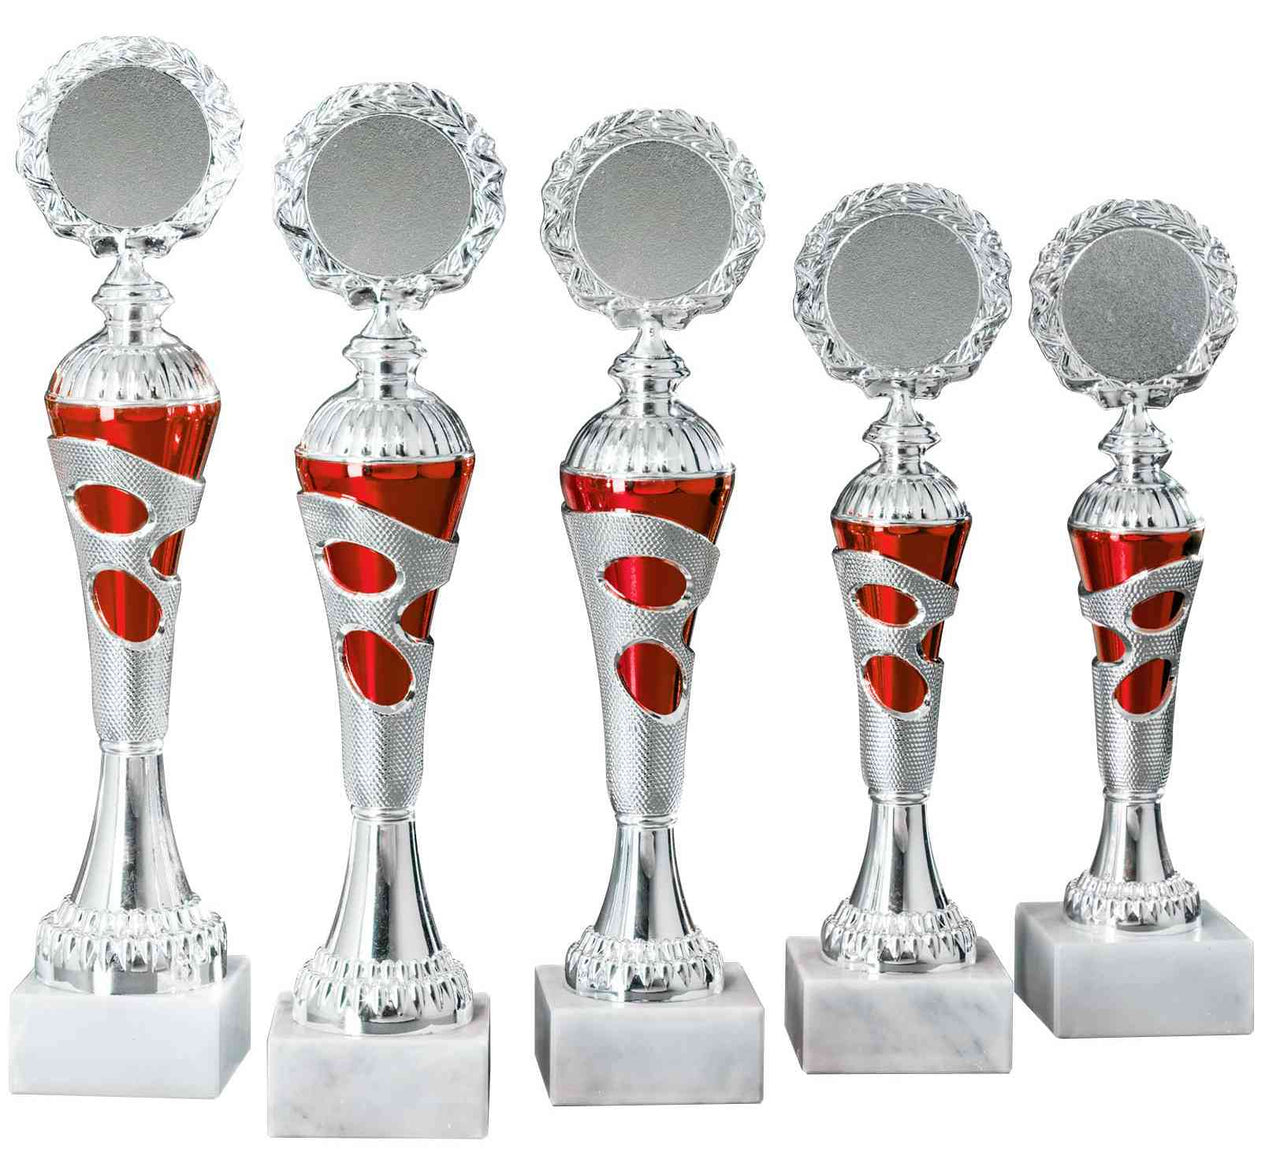 Fünf silberne und rote POMEKI Pokale Gronau 5- er Pokalserie 255 mm - 308 mm PK754730-5-E50 mit aufsteigender Höhe, in einer Reihe angeordnet.